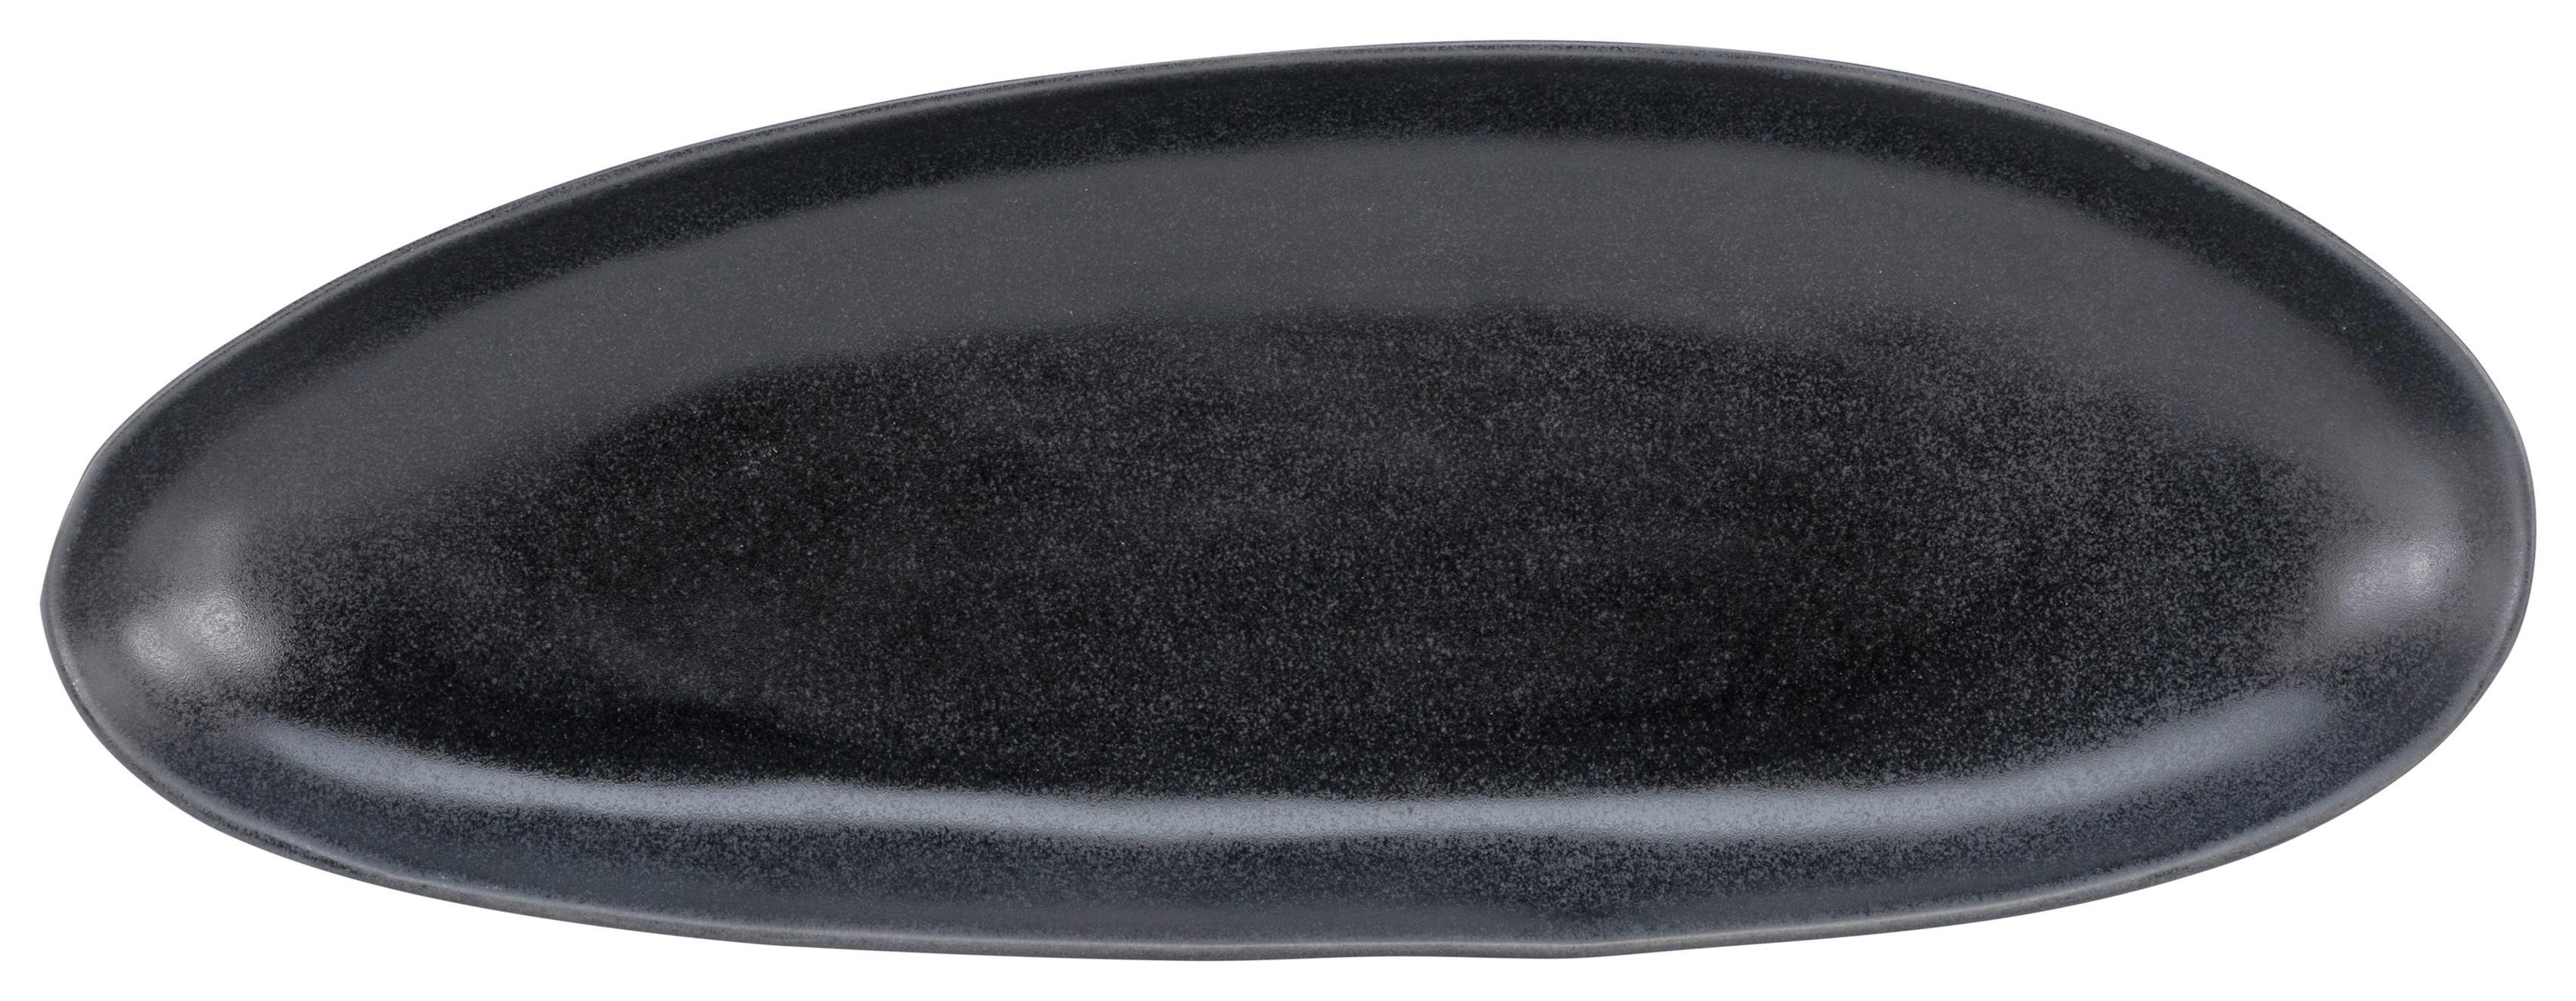 Servírovacia Tácka Gourmet-M, Ø: 35cm - čierna, Moderný, keramika (35,5/15/3,5cm) - Premium Living